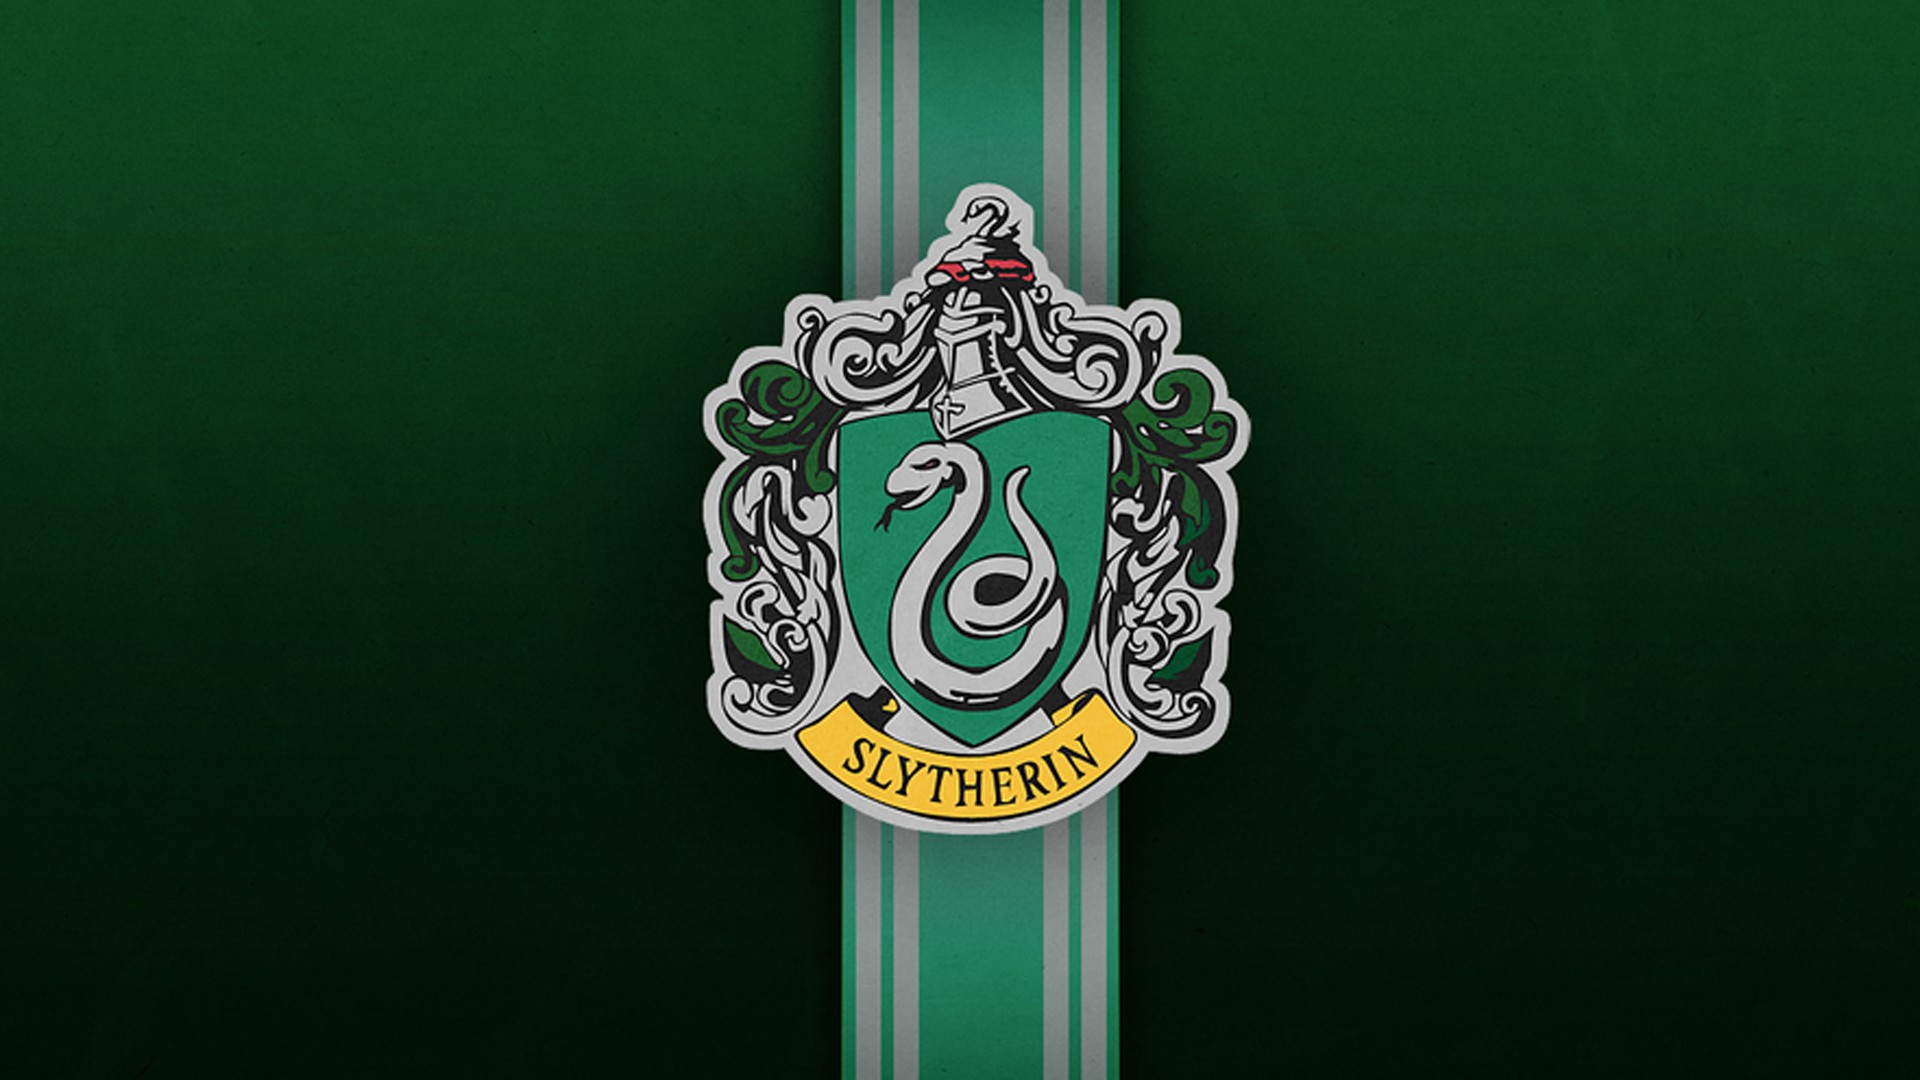 slytherin wallpaper,green,emblem,crest,font,logo